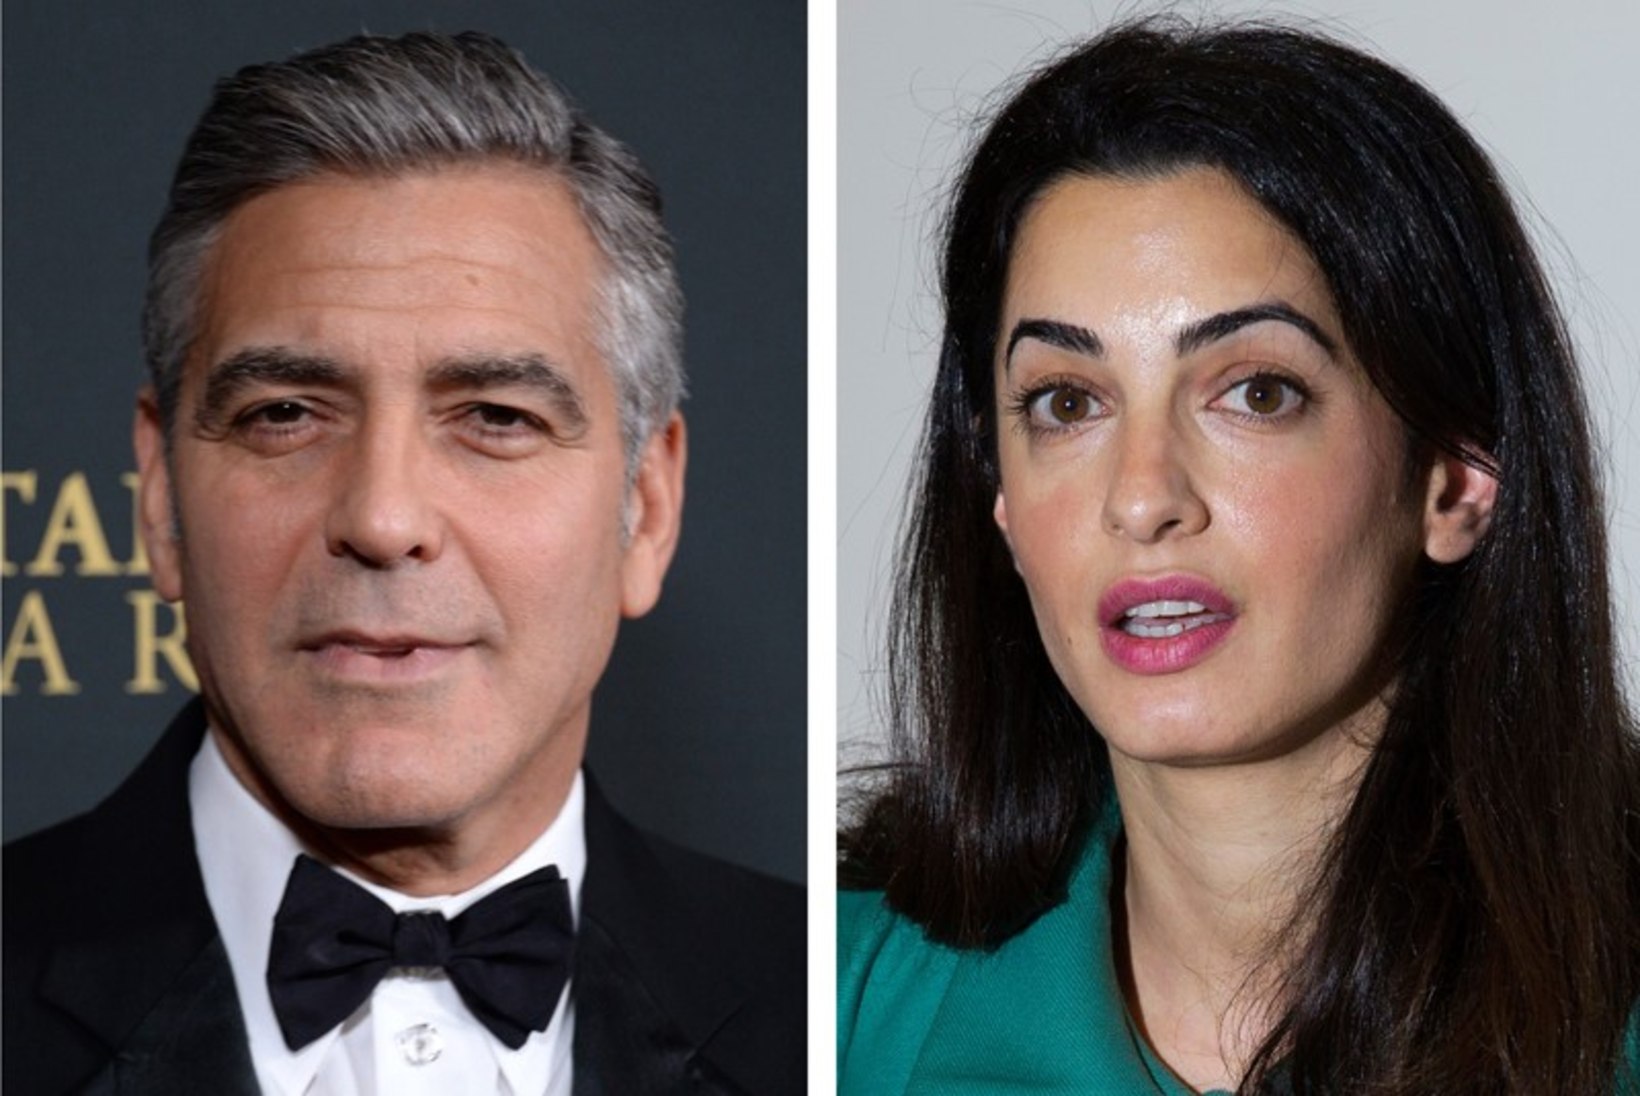 Clooney ämm on pulmade vastu